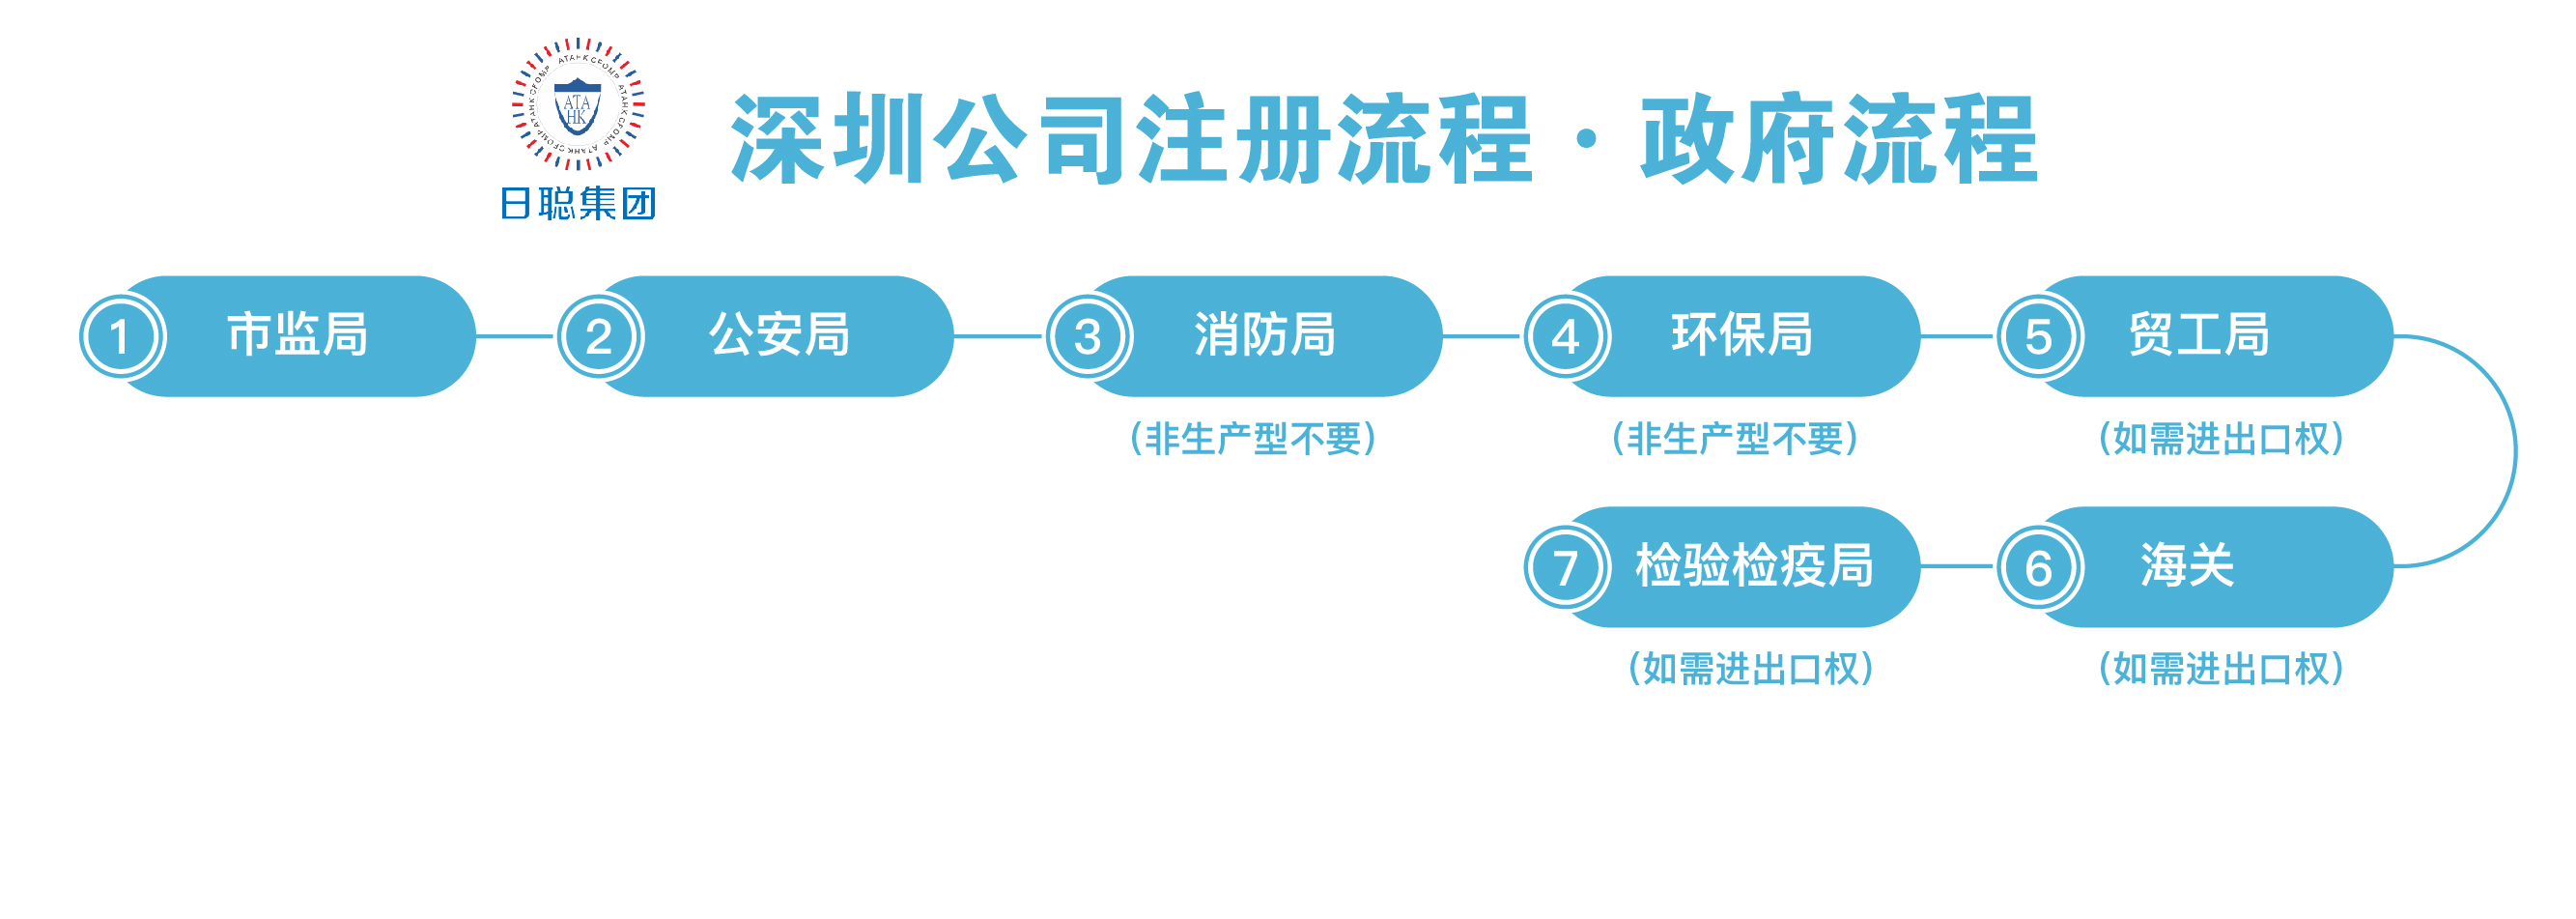 深圳注册公司政府流程图